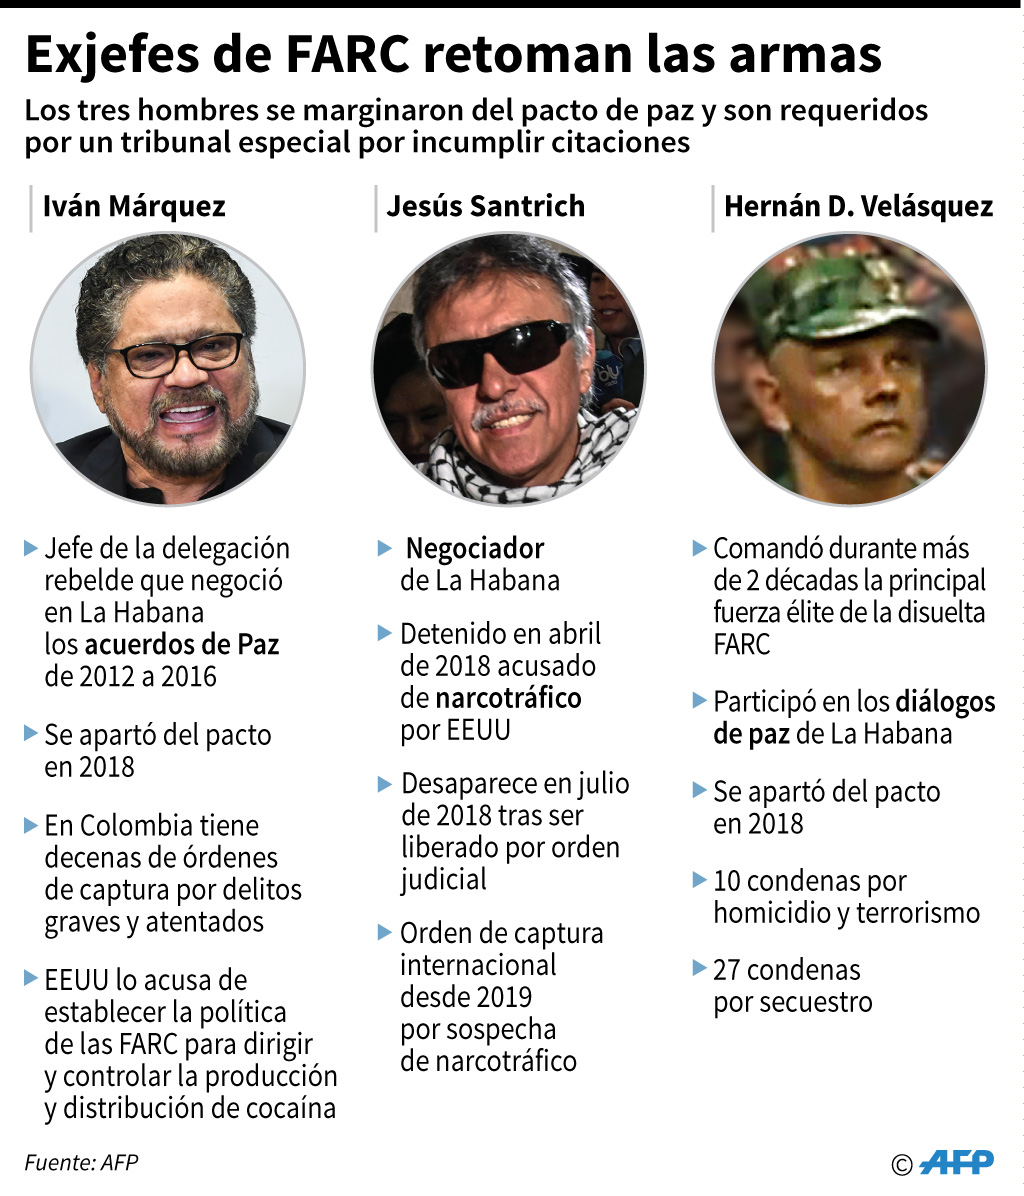 Fichas biográficas de los tres exjefes de la disuelta guerrilla de las FARC que anunciaron la nueva rebelión en Colombia. (AFP)